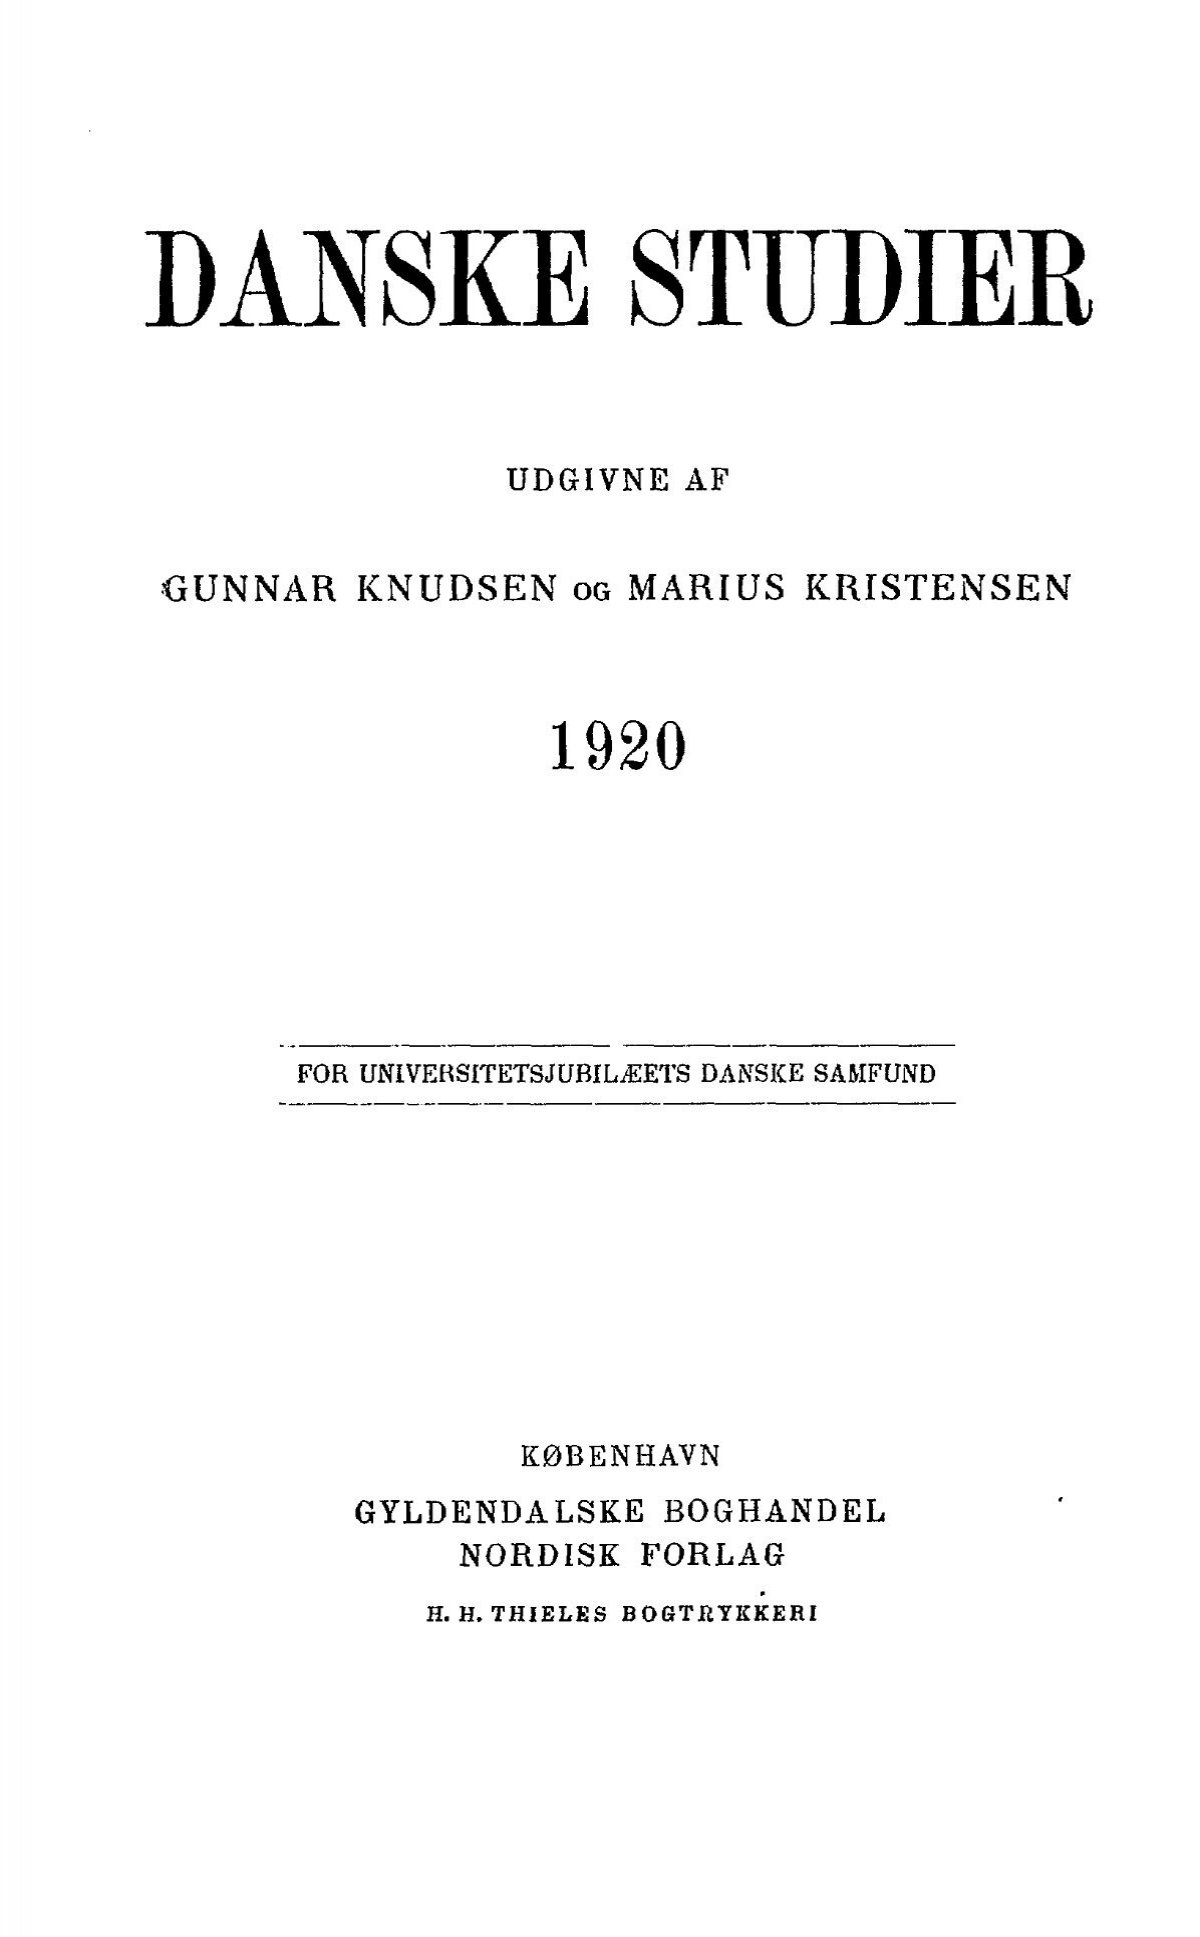 Studier 1920